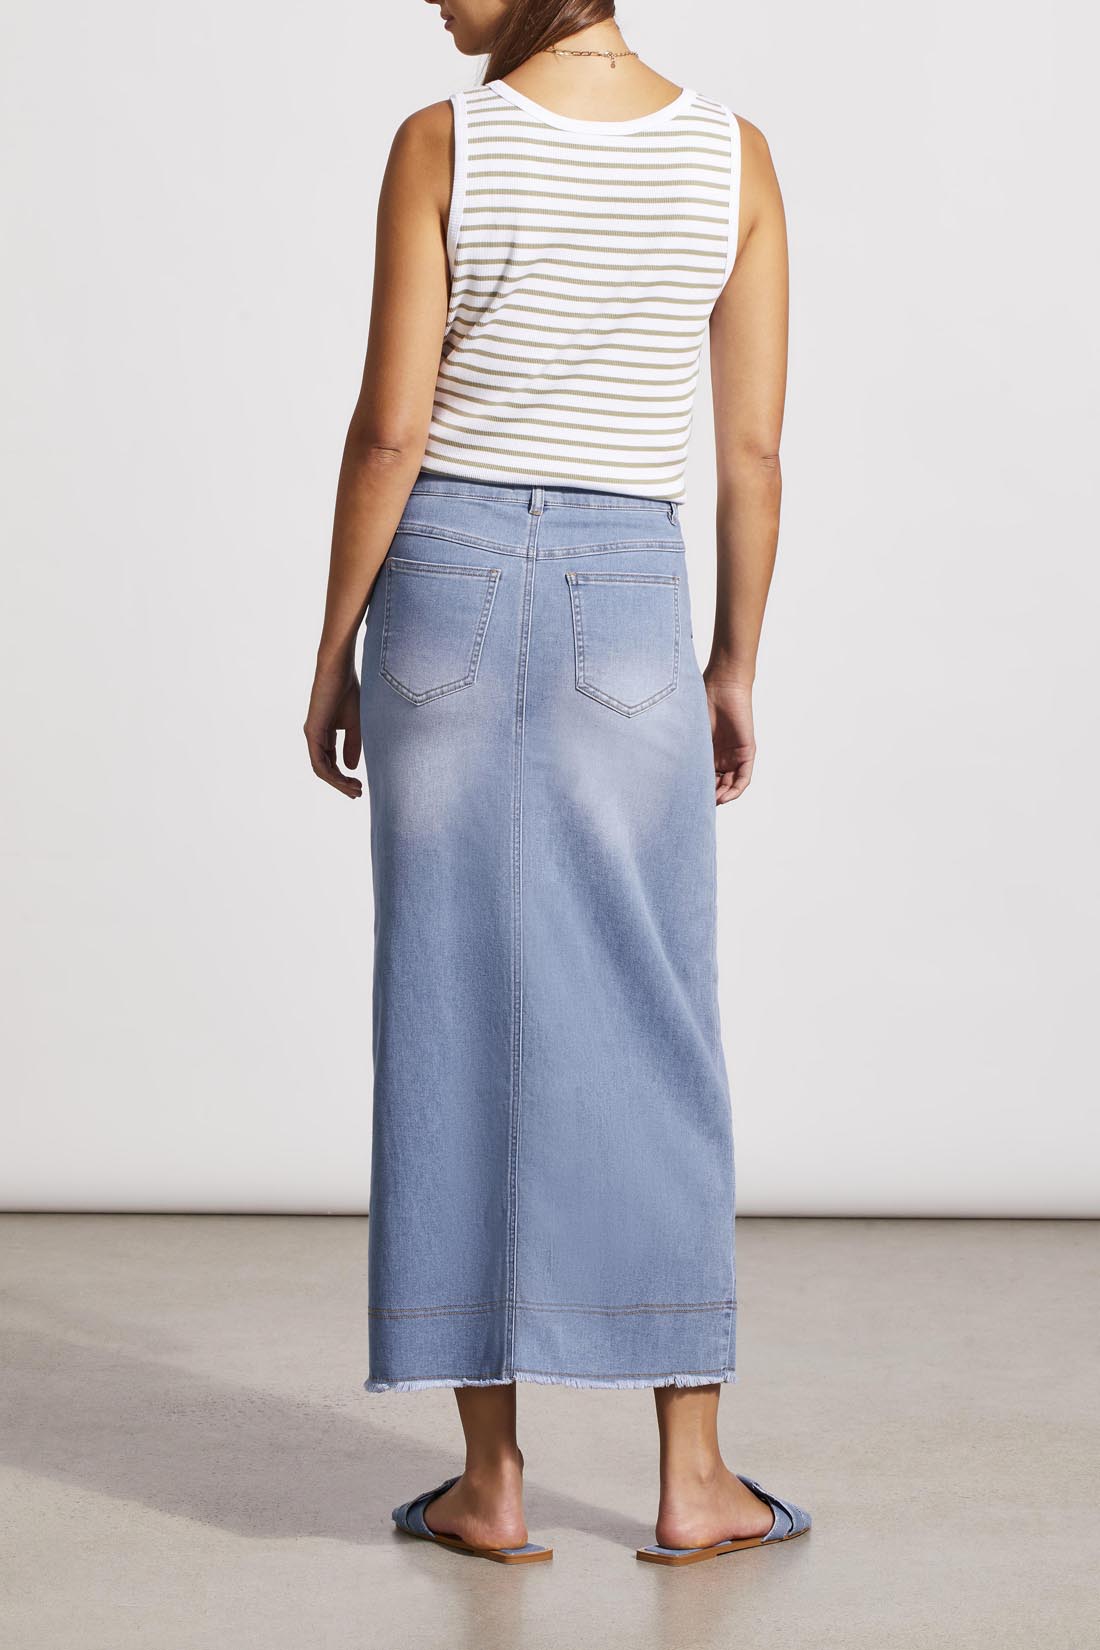 TRIBAL Full Length Denim Skirt w/Front Slit & Pockets - Sky Blue